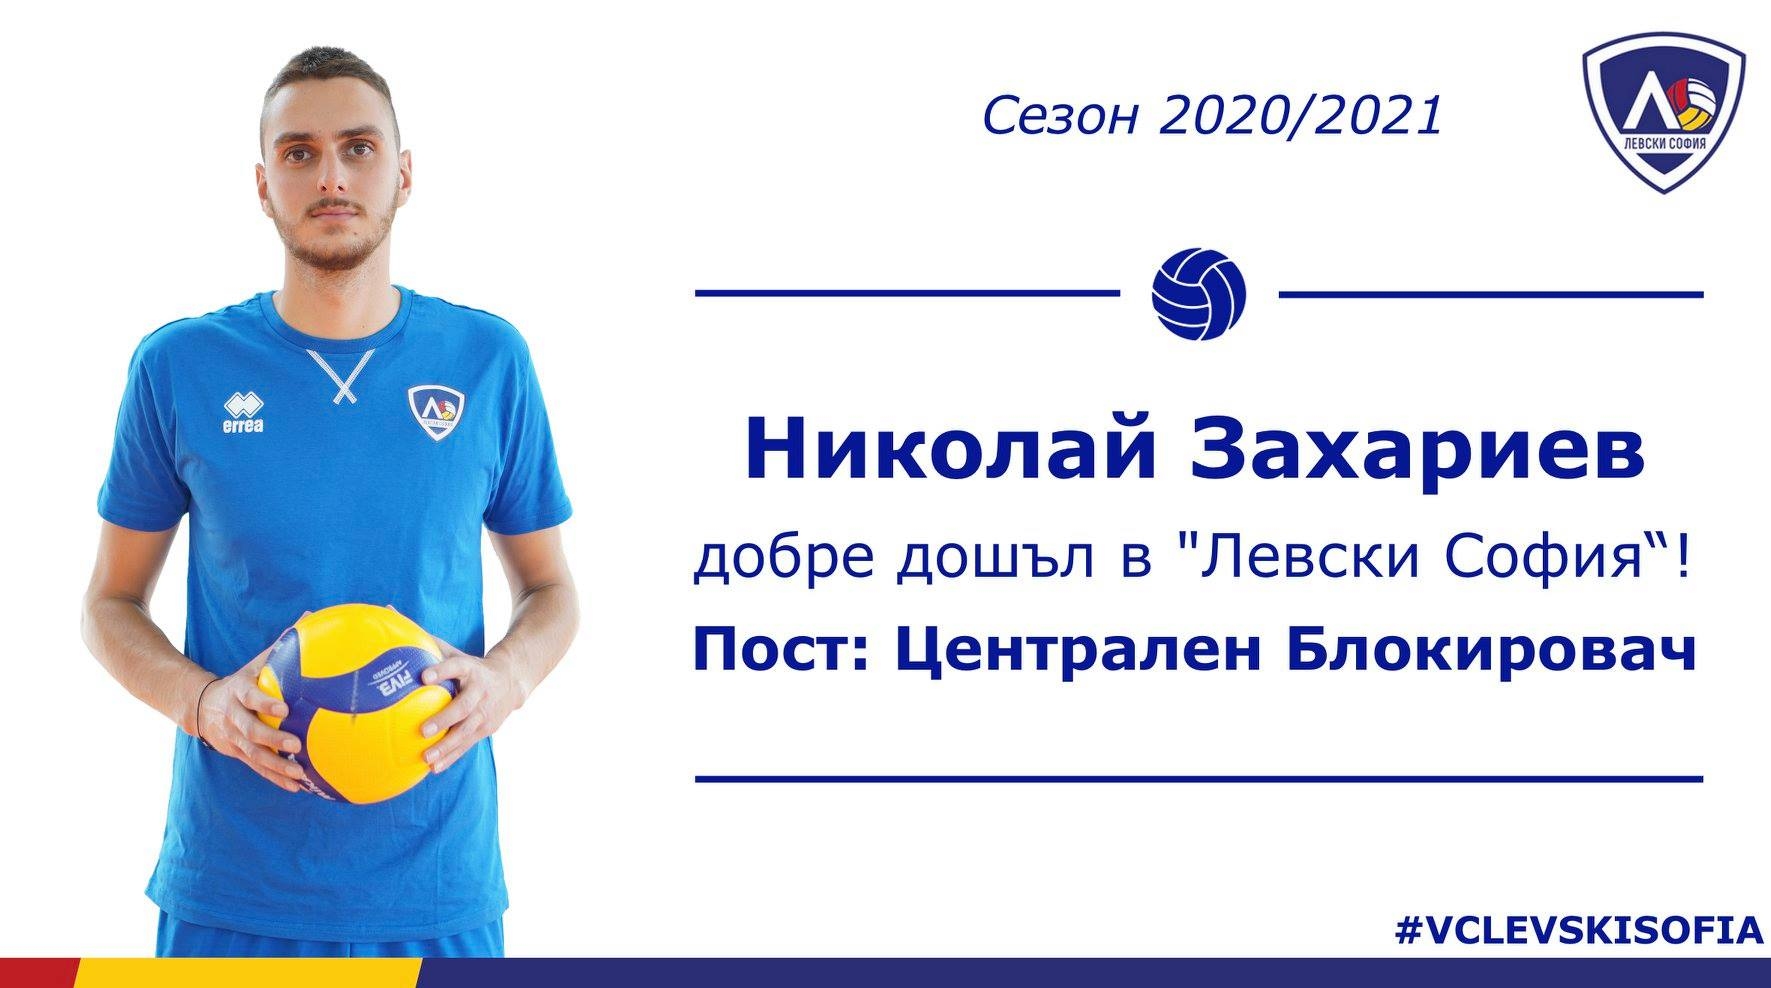 Николай Захариев е третото ново попълнение на волейболния Левски. 19-годишният